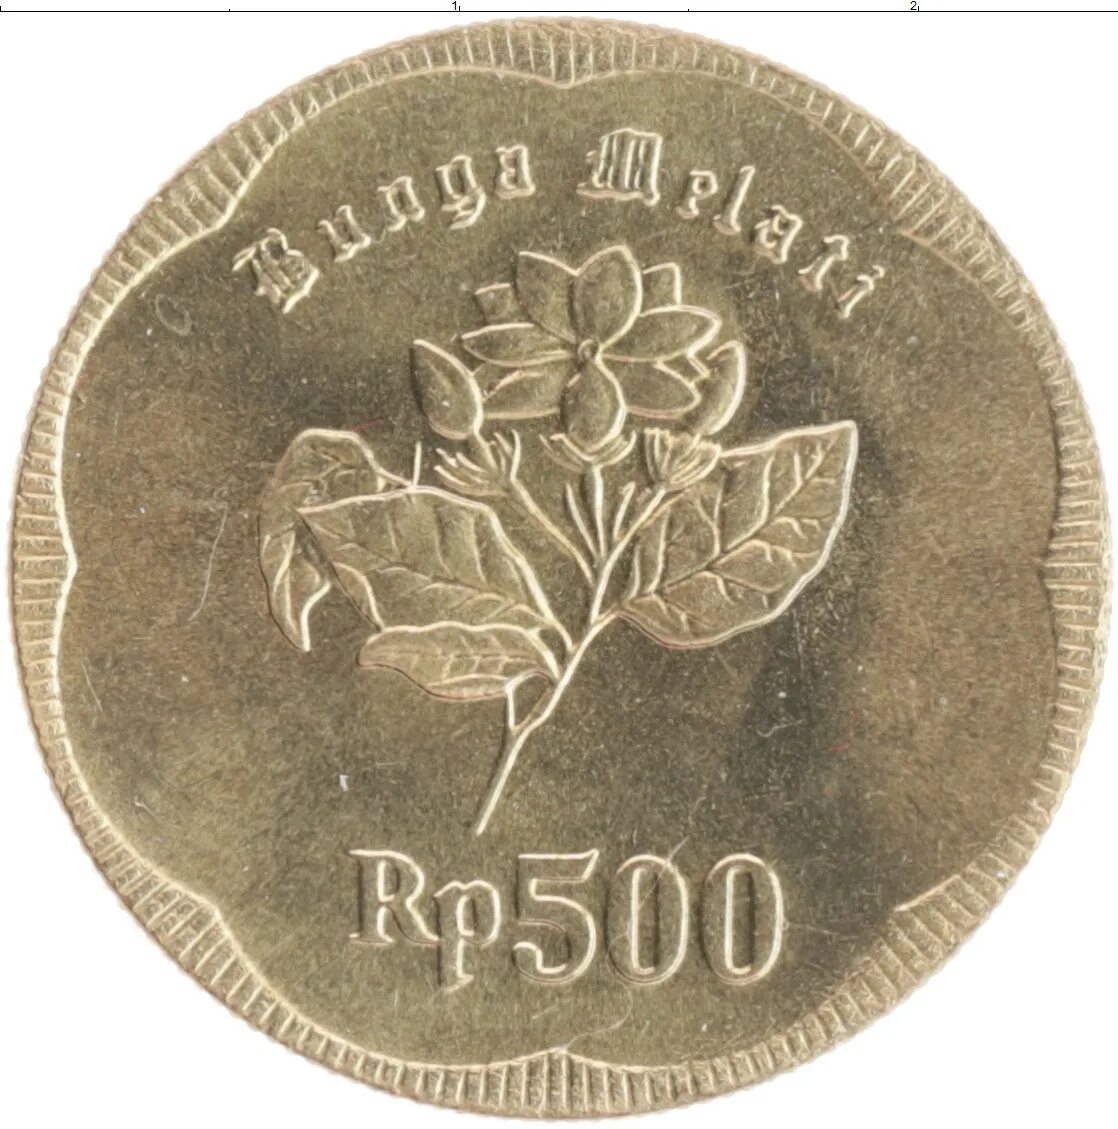 Индонезийские монеты. 500 Рупий. Монета Индонезия 500 рупий 2016. Индонезийская рупия знак.